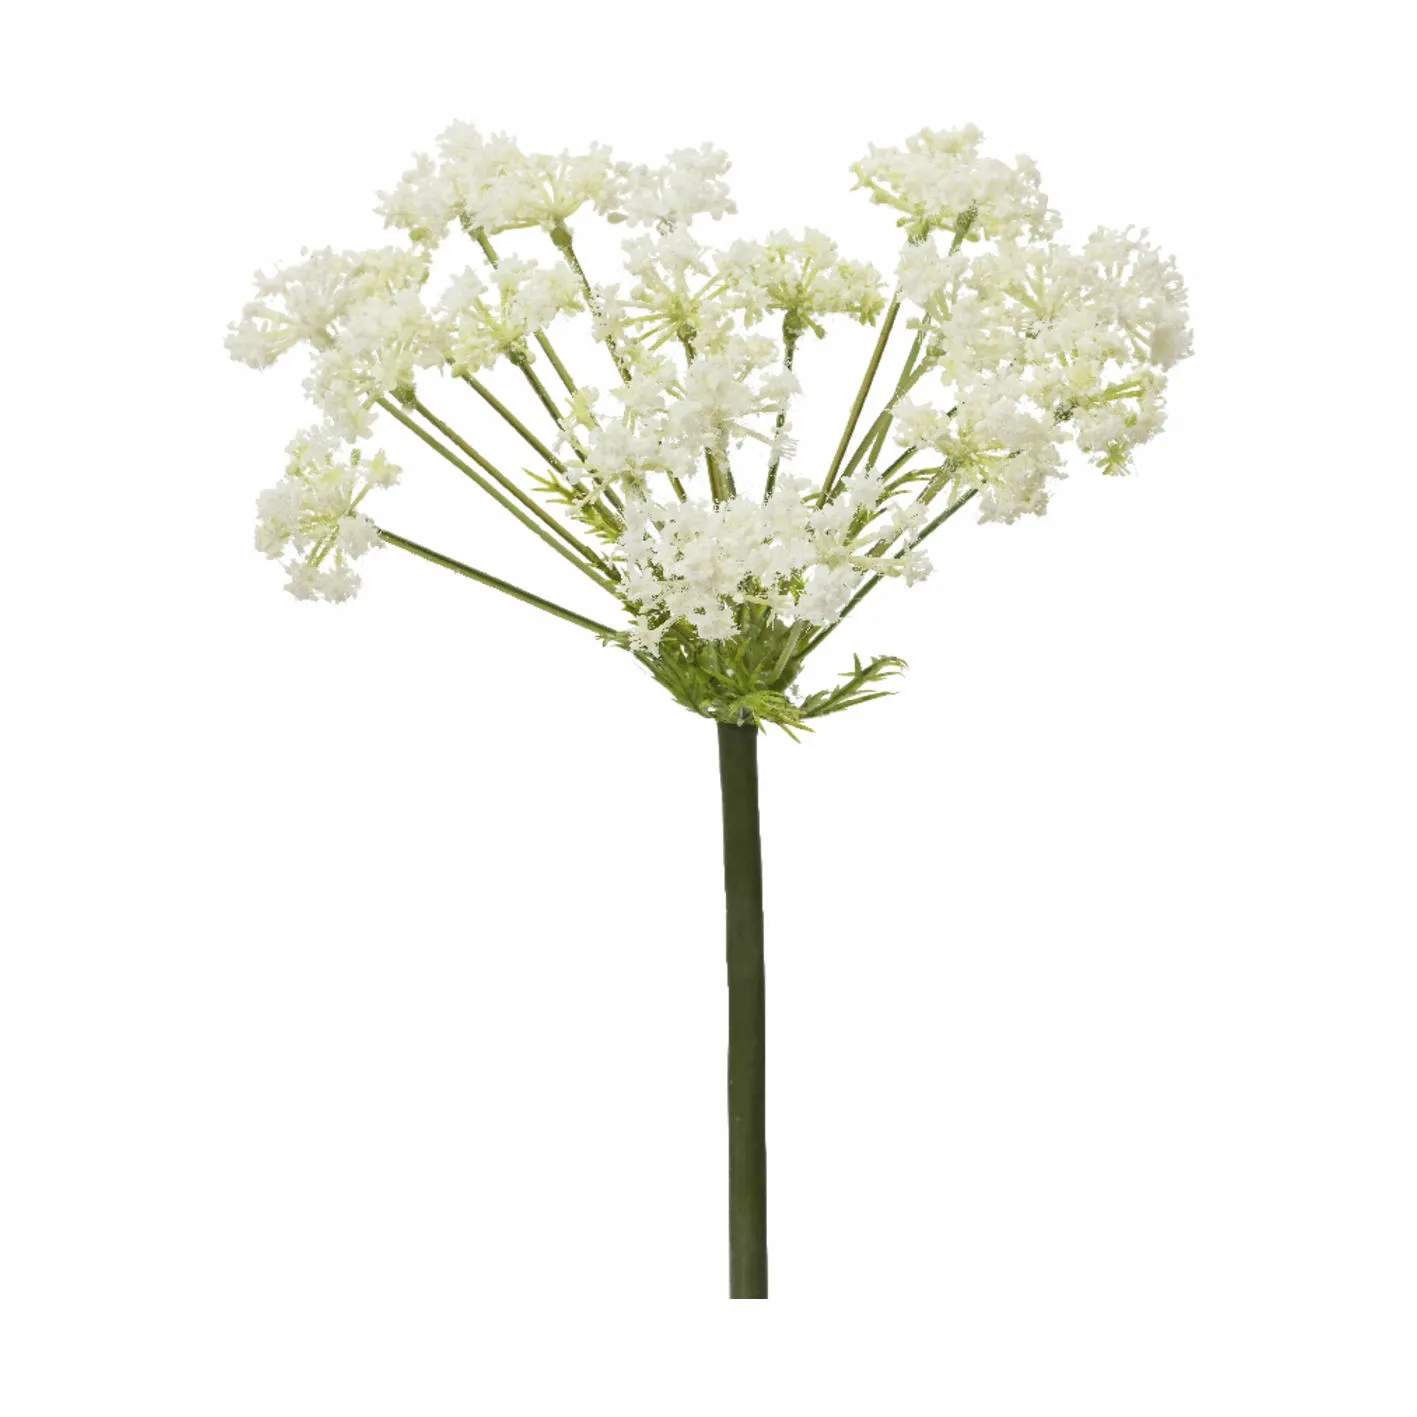 Kunstig Blomst - Vild Gulerod, hvid, large